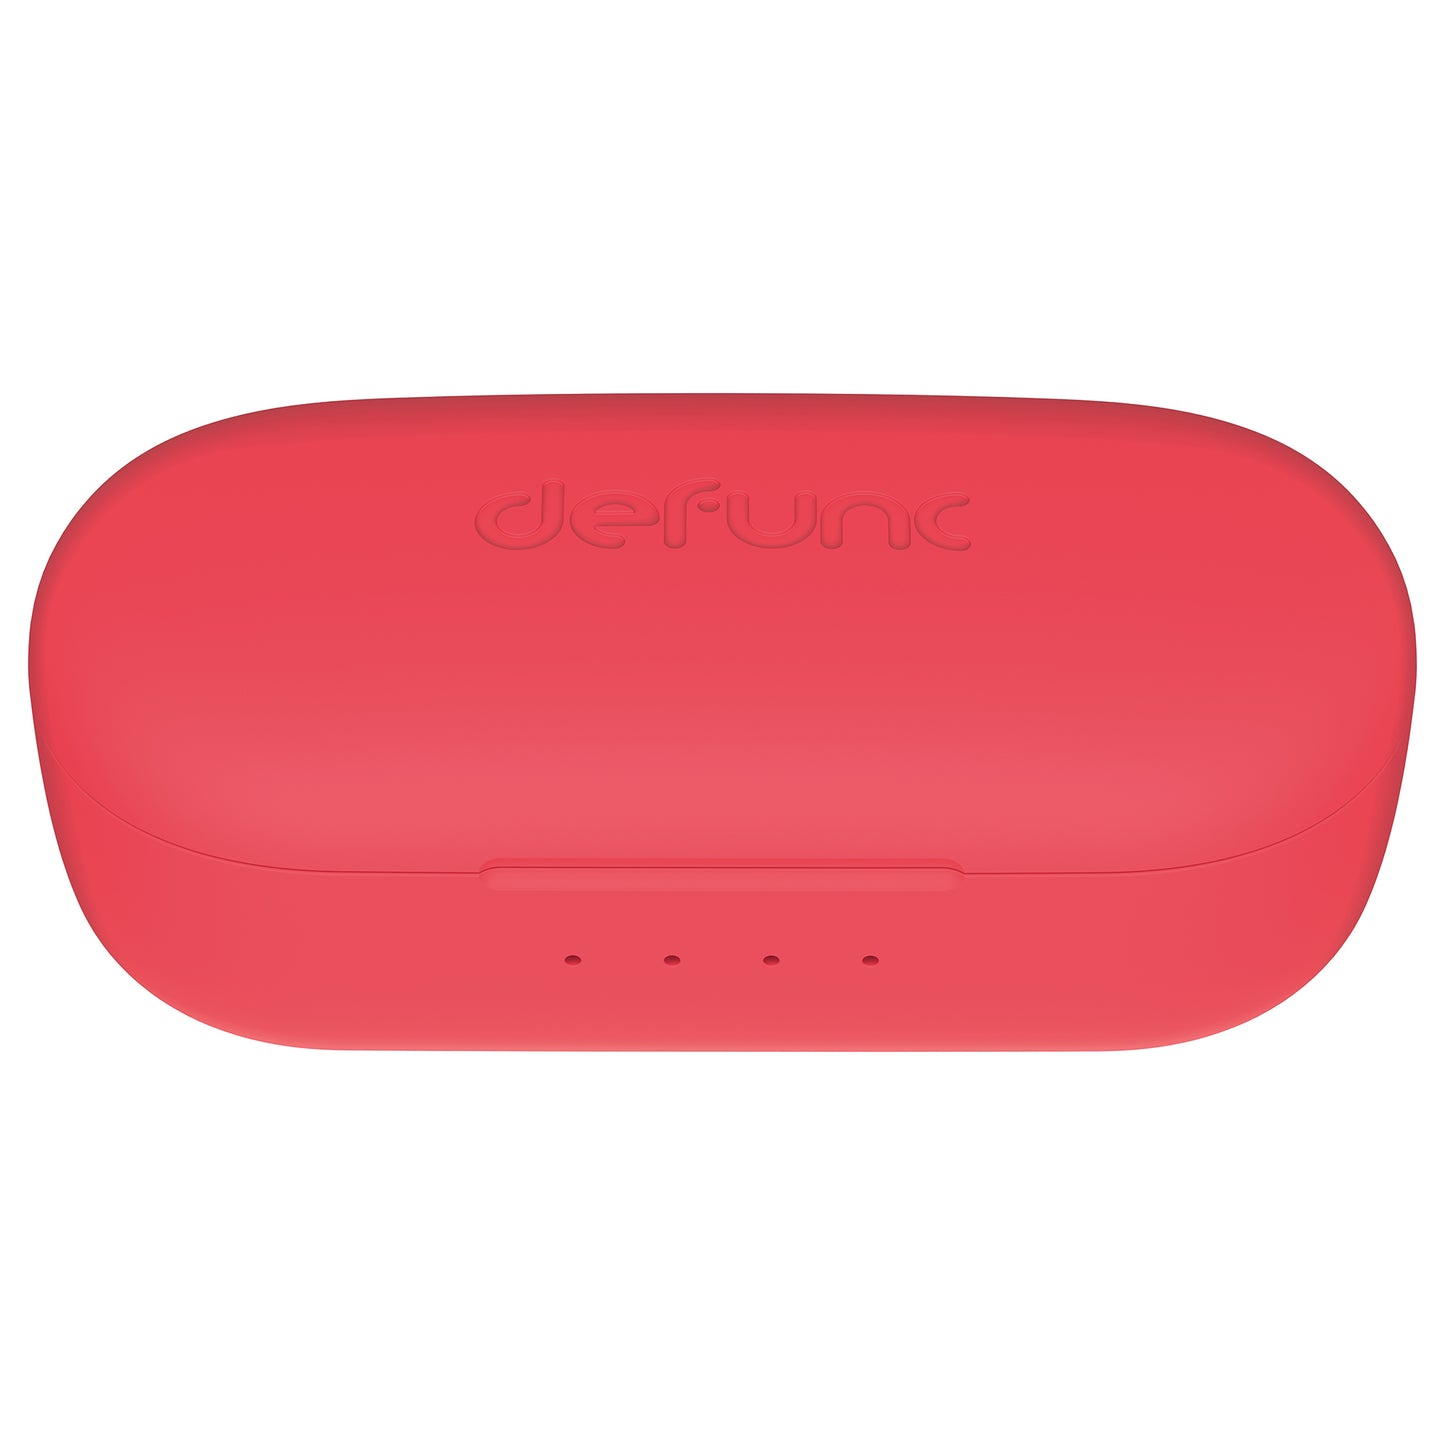 DEFUNC True Basic True Wireless Earphones - Red